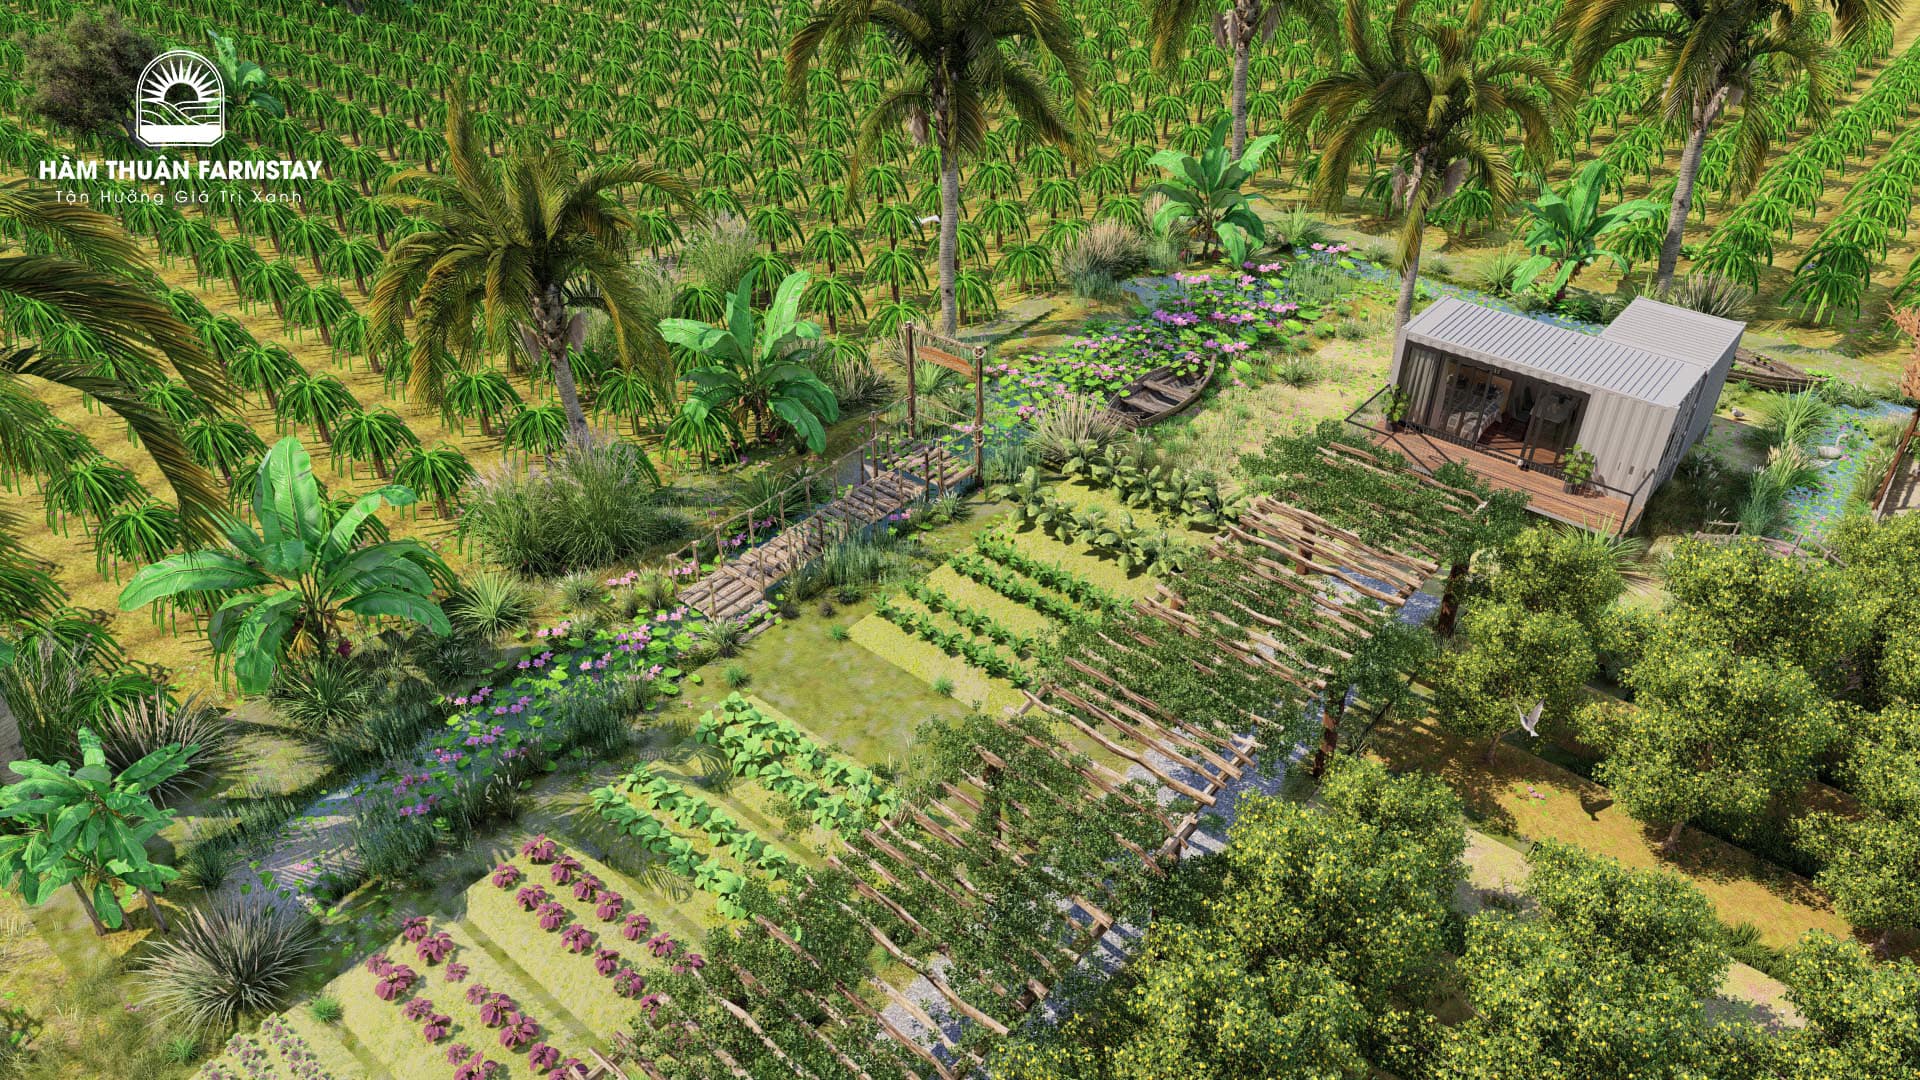 Phối cảnh 3D Hàm Thuận Farmstay nhìn từ trên cao